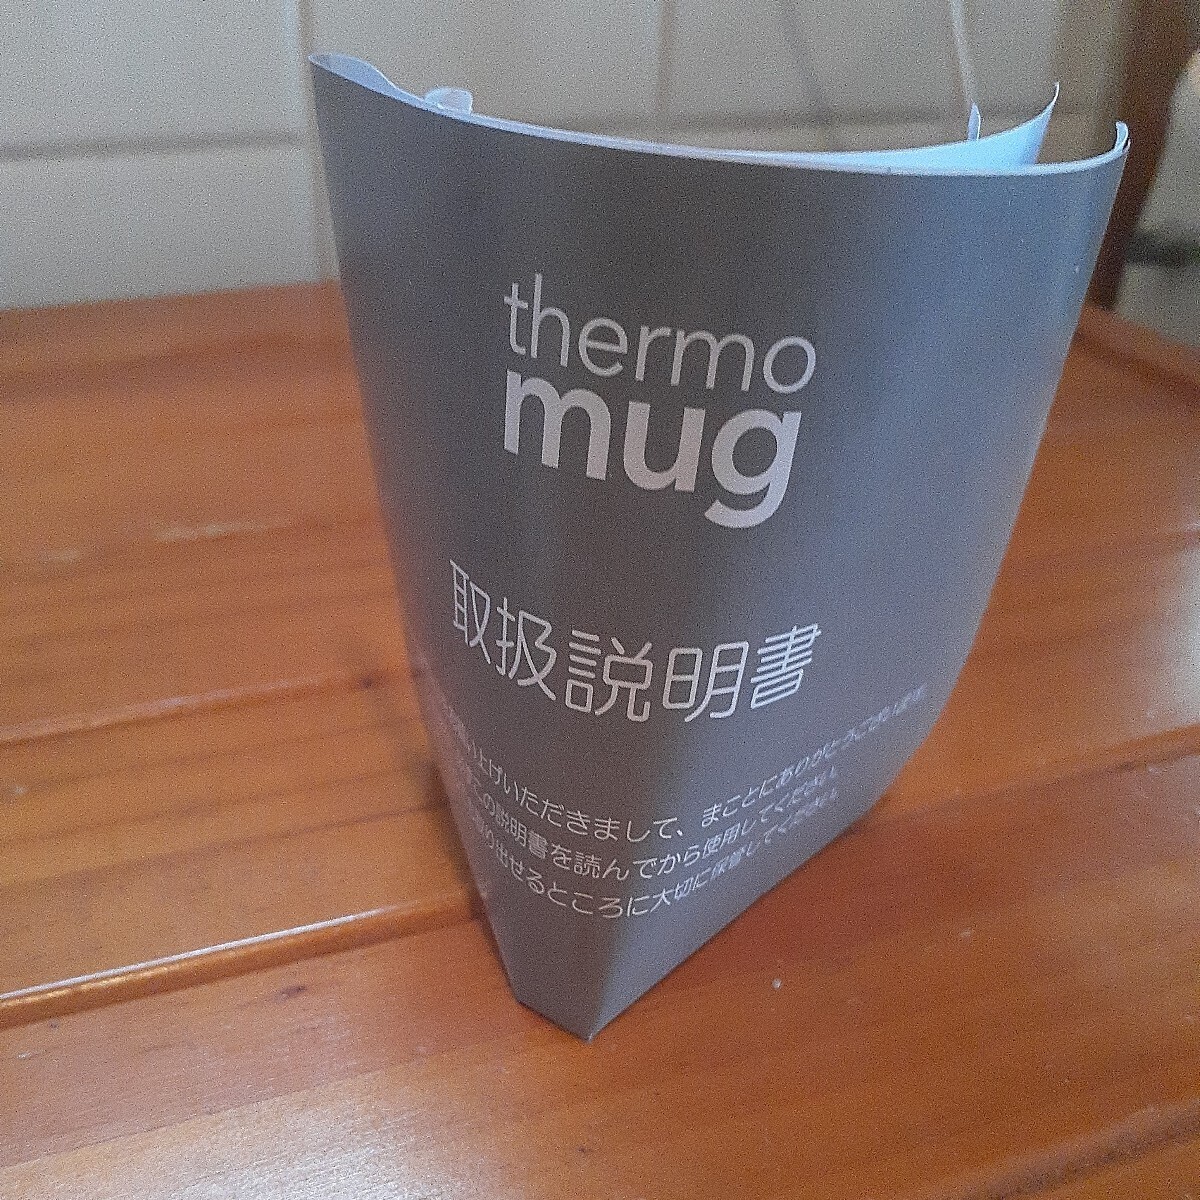  unused Afternoon Tea Afternoon Tea thermo mug Thermos mug tumbler 0.3L postage 520 jpy 